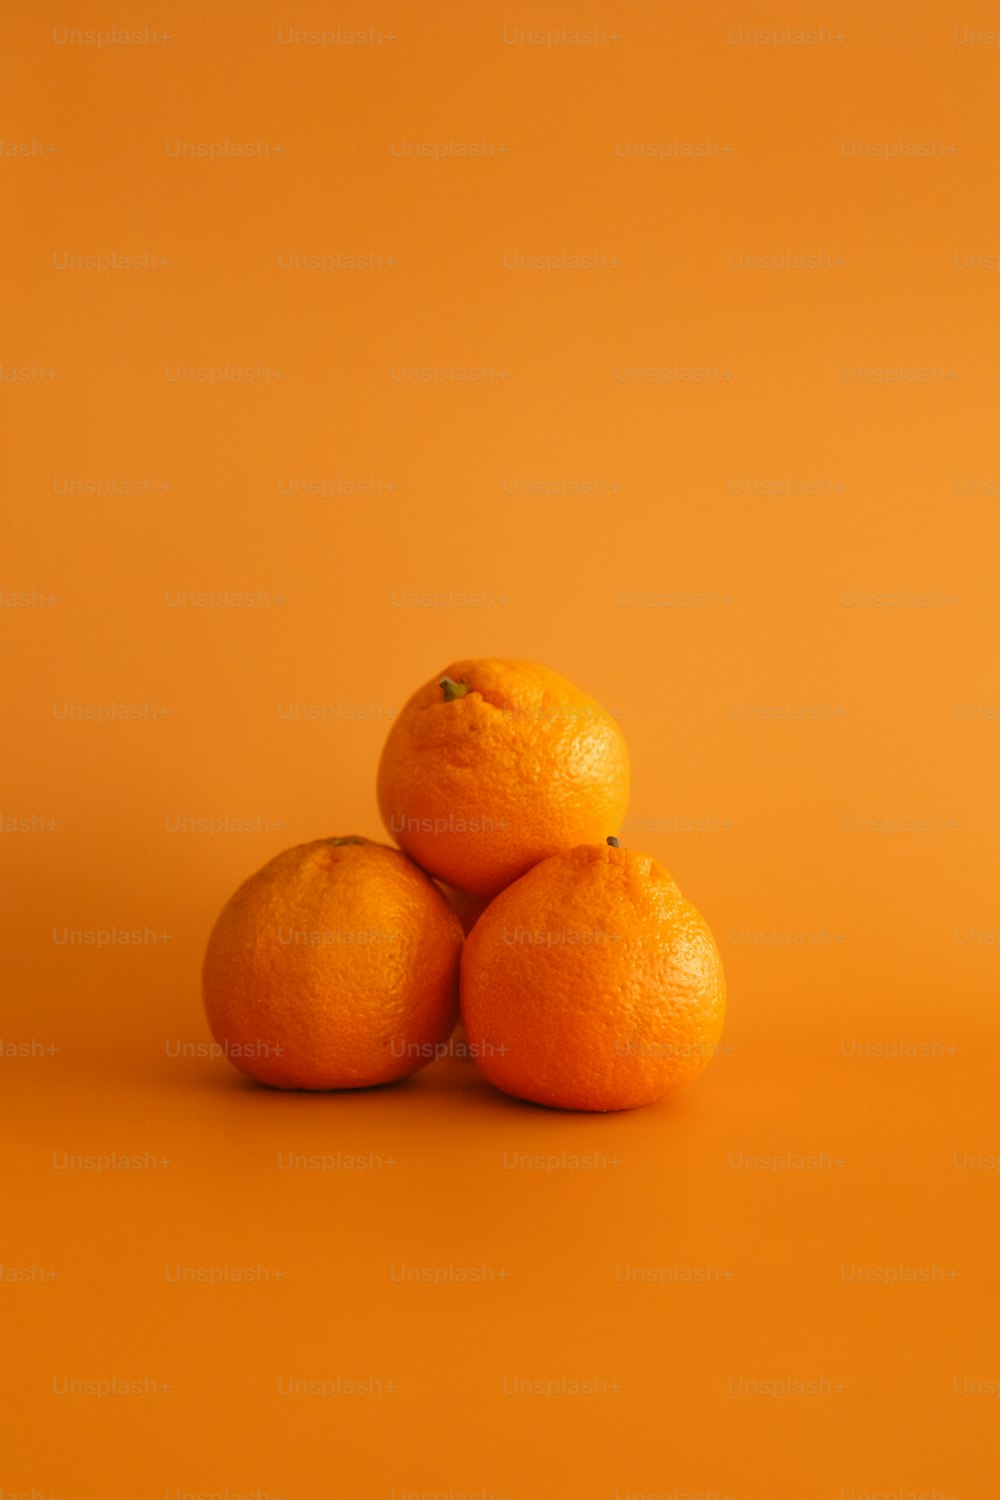 세 개의 오렌지가 서로 위에 앉아 있습니다.